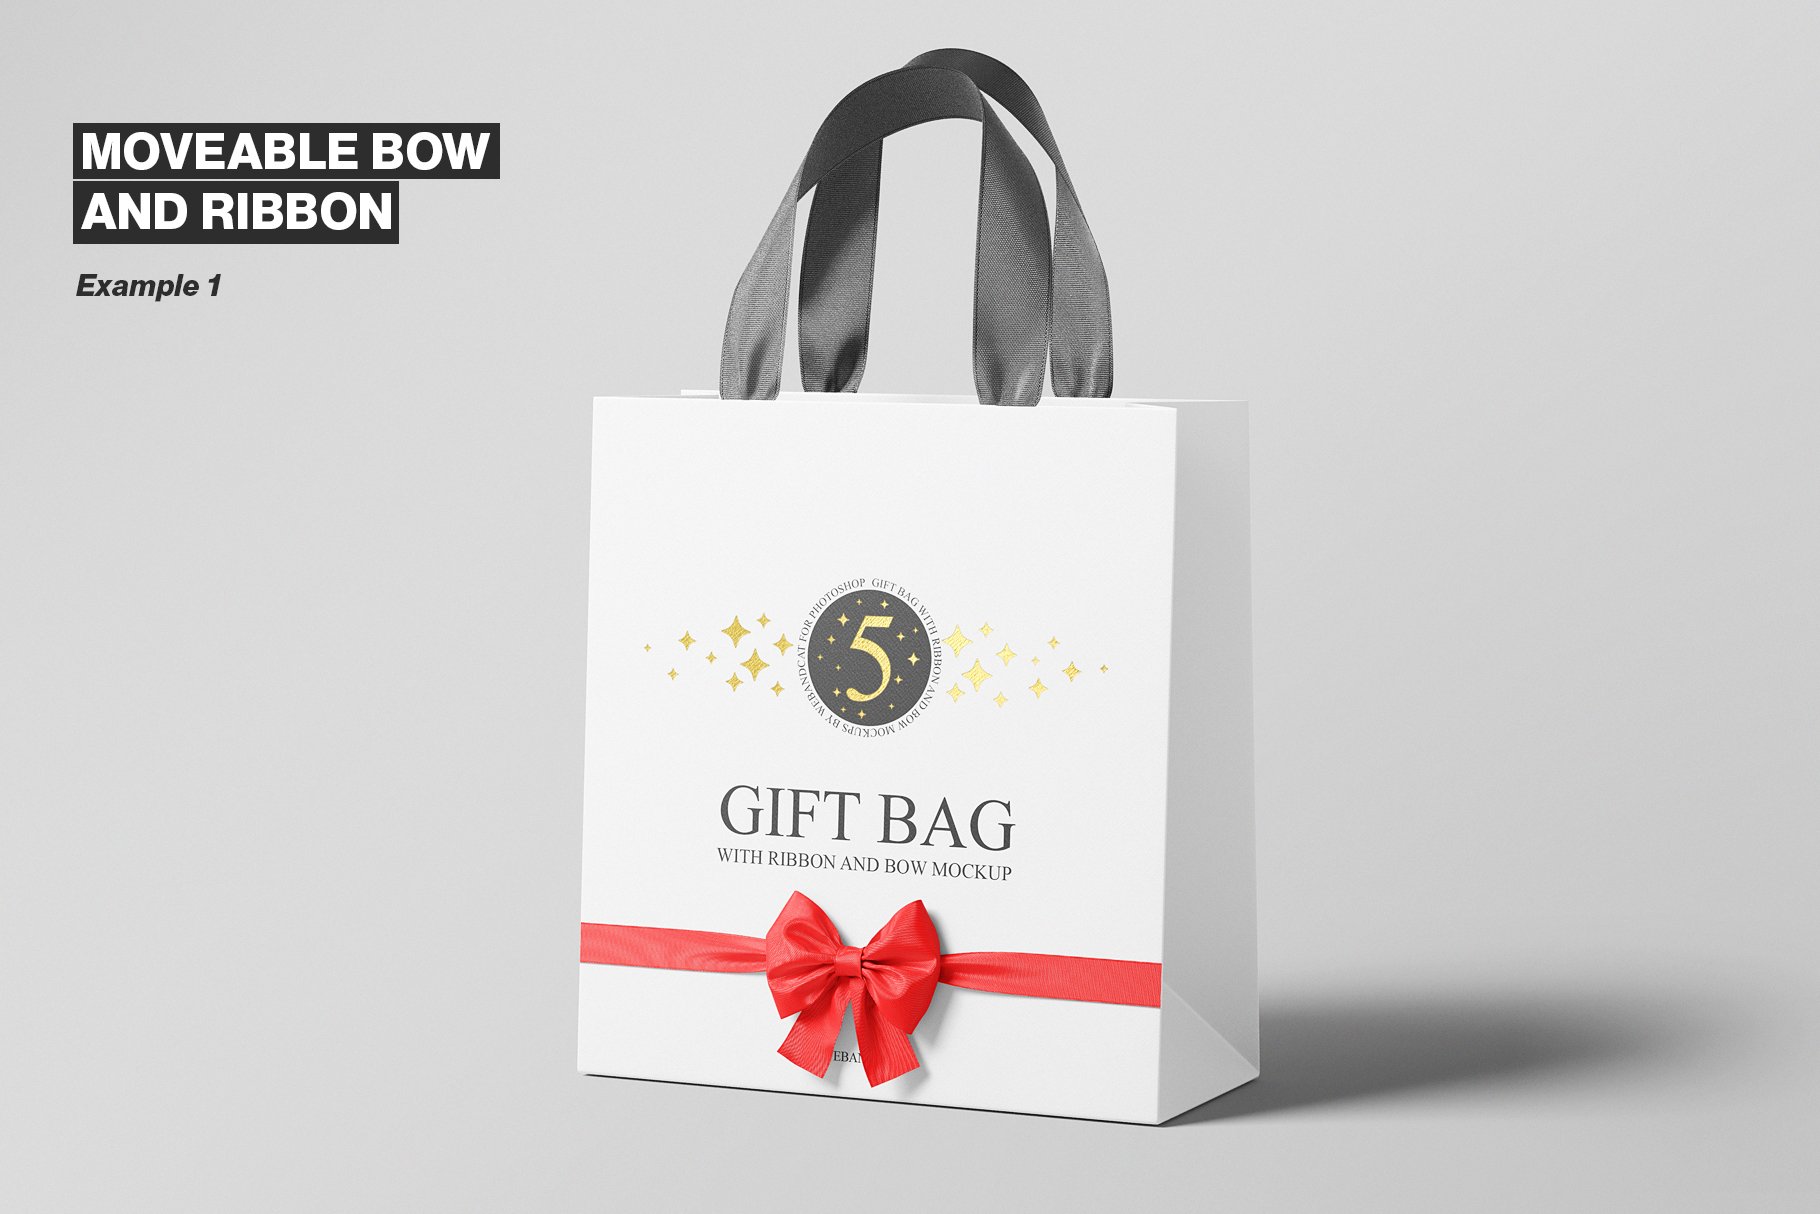 gift bag with ribbon and bow mockup 6 792